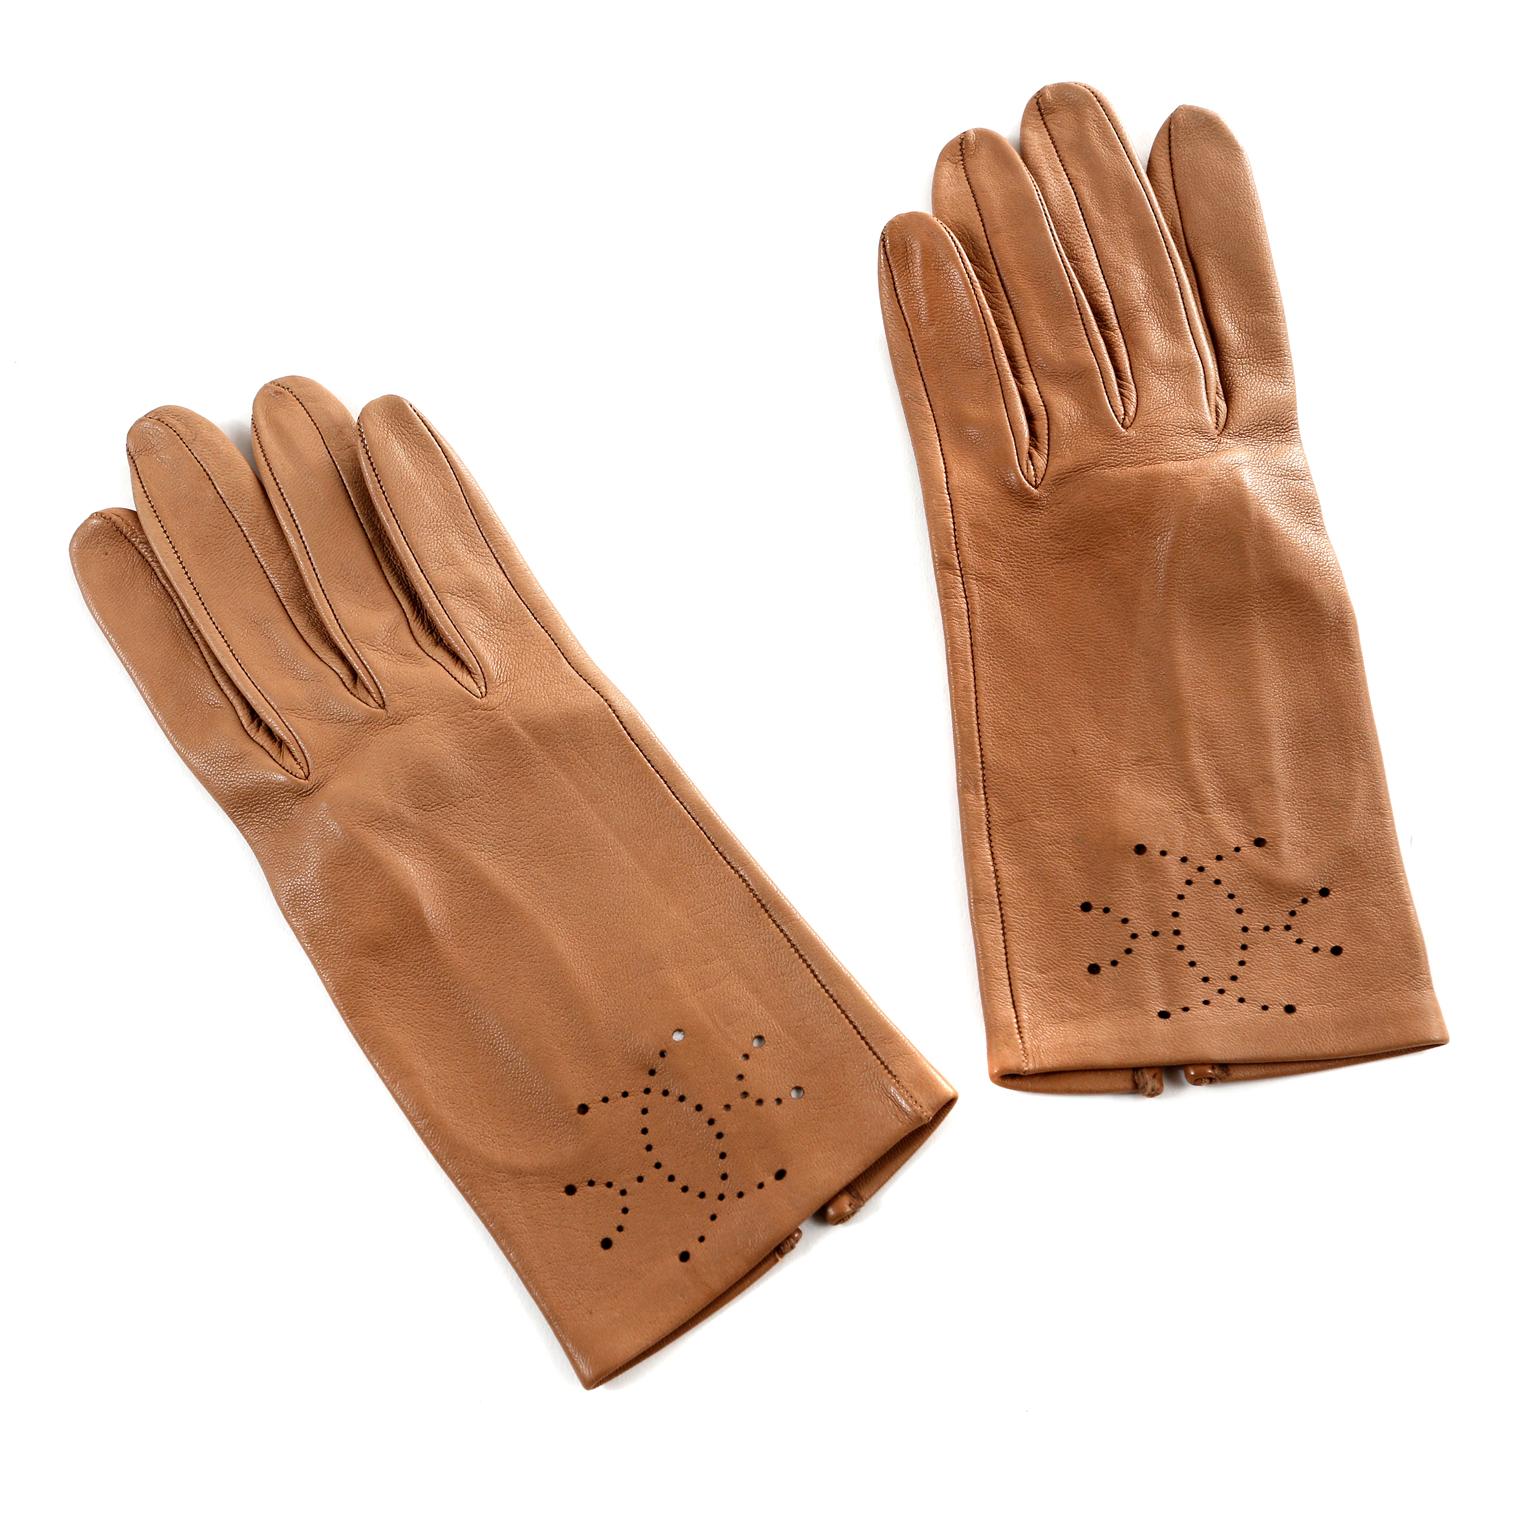 6.5 glove size